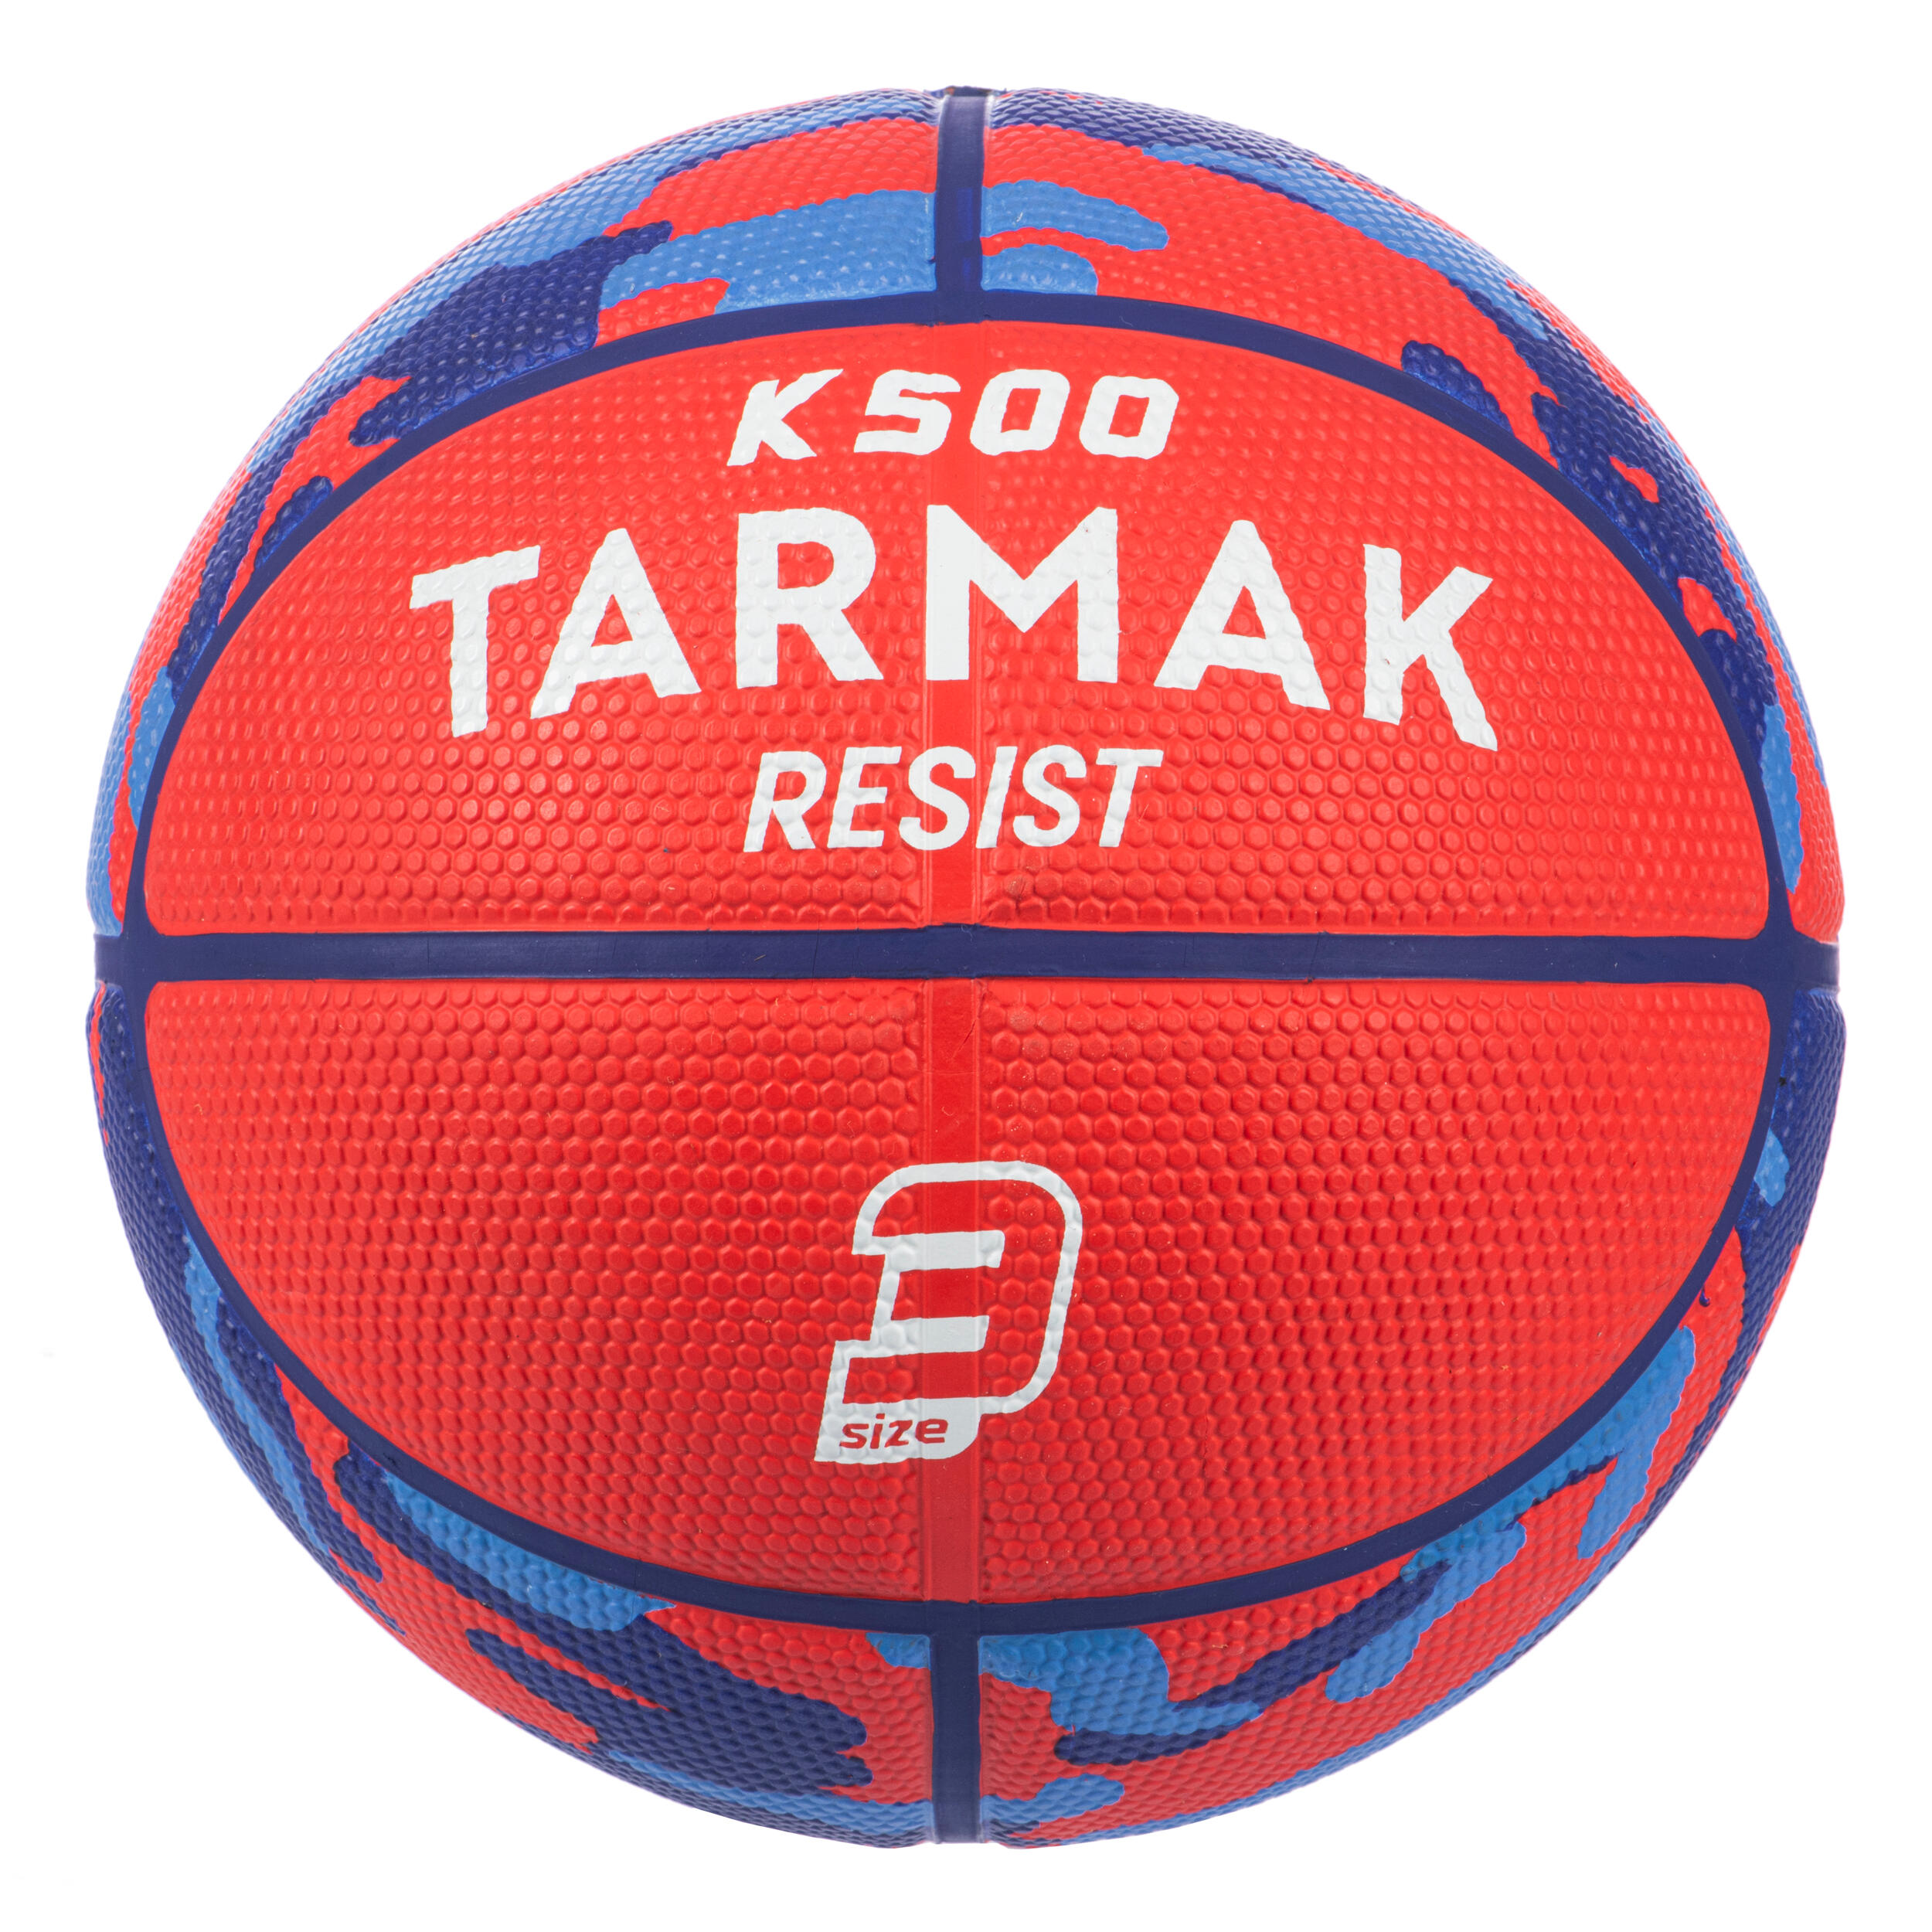 [ส่งฟรี ] บาสเกตบอลแท้ ลูกบาสเกตบอลเด็ก ลูกบาสเบอร์ 3  สำหรับเด็ก เล็ก โต ลูกบาสเก็ตบอลเบอร์ 3 อายุไม่เกิน 6 ปีรุ่น K500 Basketball kids Basketball Ball outdoor Basketball Ball size 3 Kids' Size 3 Basketball K500 - Red For children up to age 6